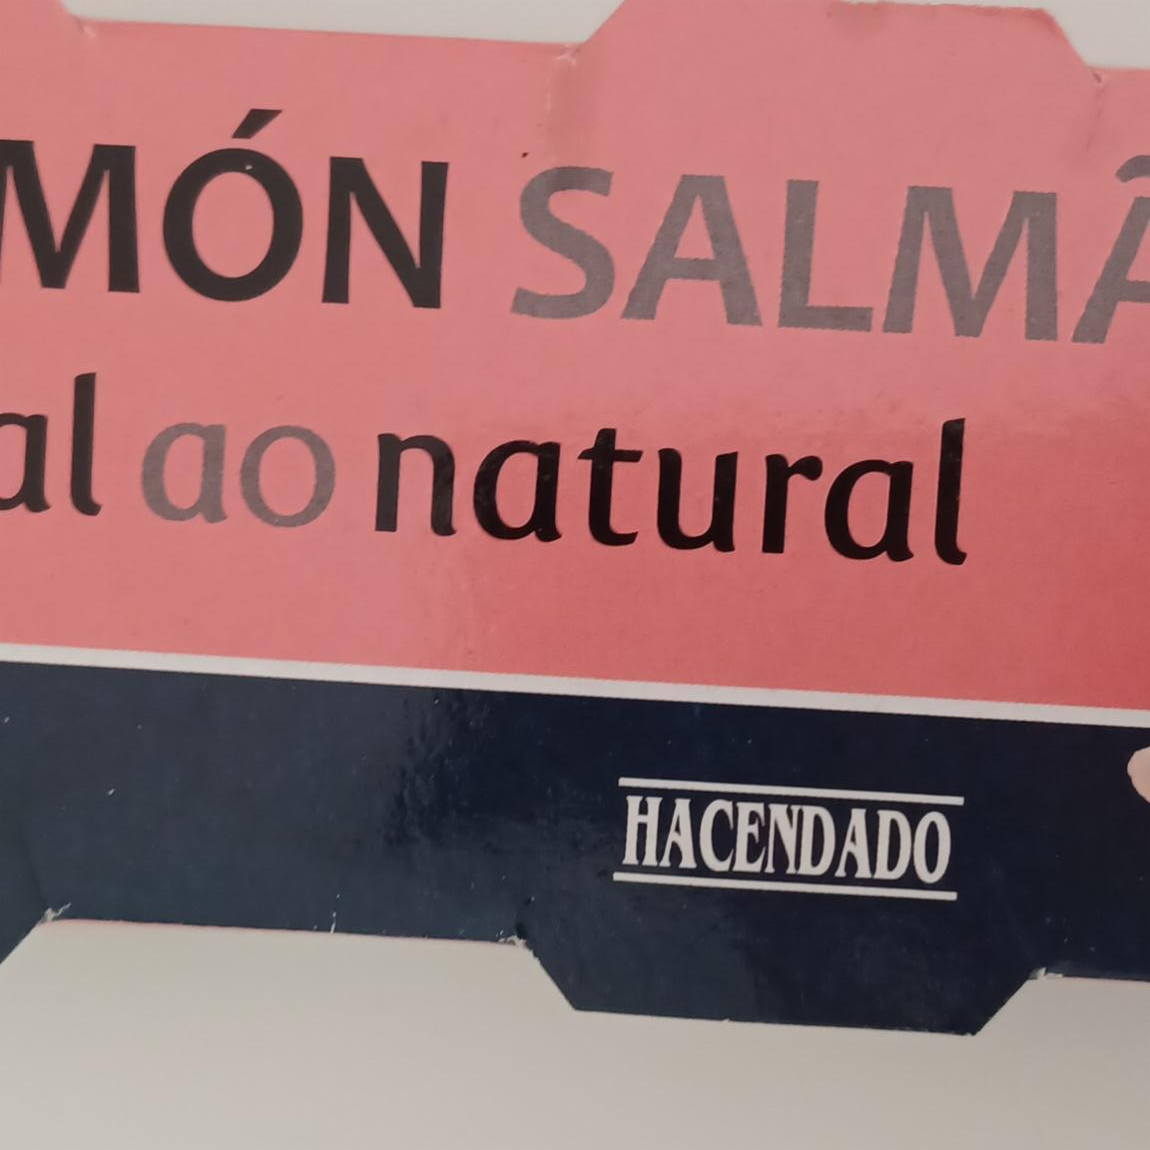 Fotografie - Salmón al natural Hacendado